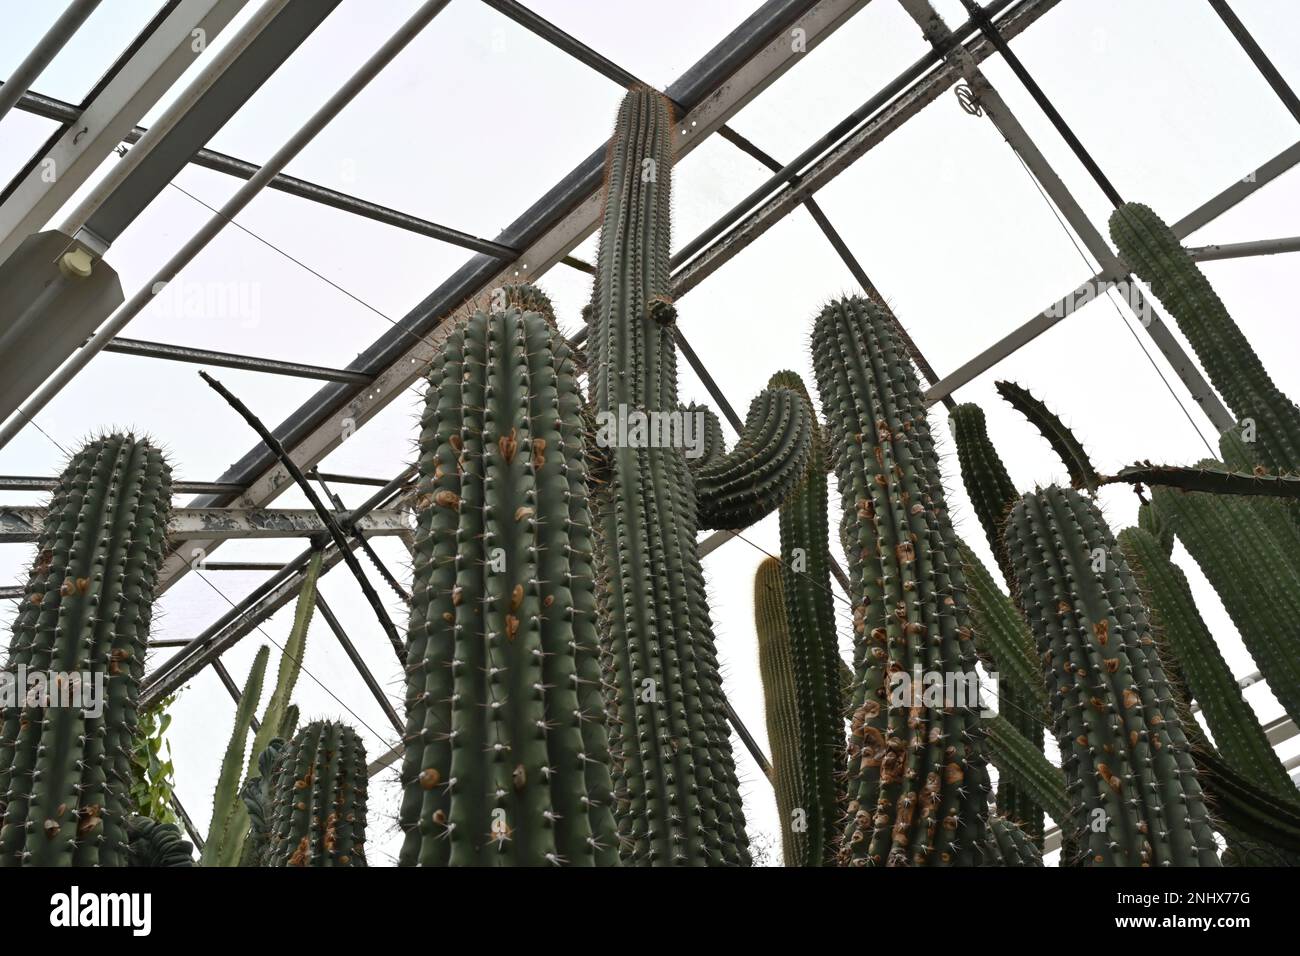 Kaktus genannt bei lateinischem Cephalocereus scoparius. Lange Stiele, die in der Ansicht mit niedrigem Winkel erfasst werden. Im Hintergrund befindet sich ein Gewächshaus. Stockfoto